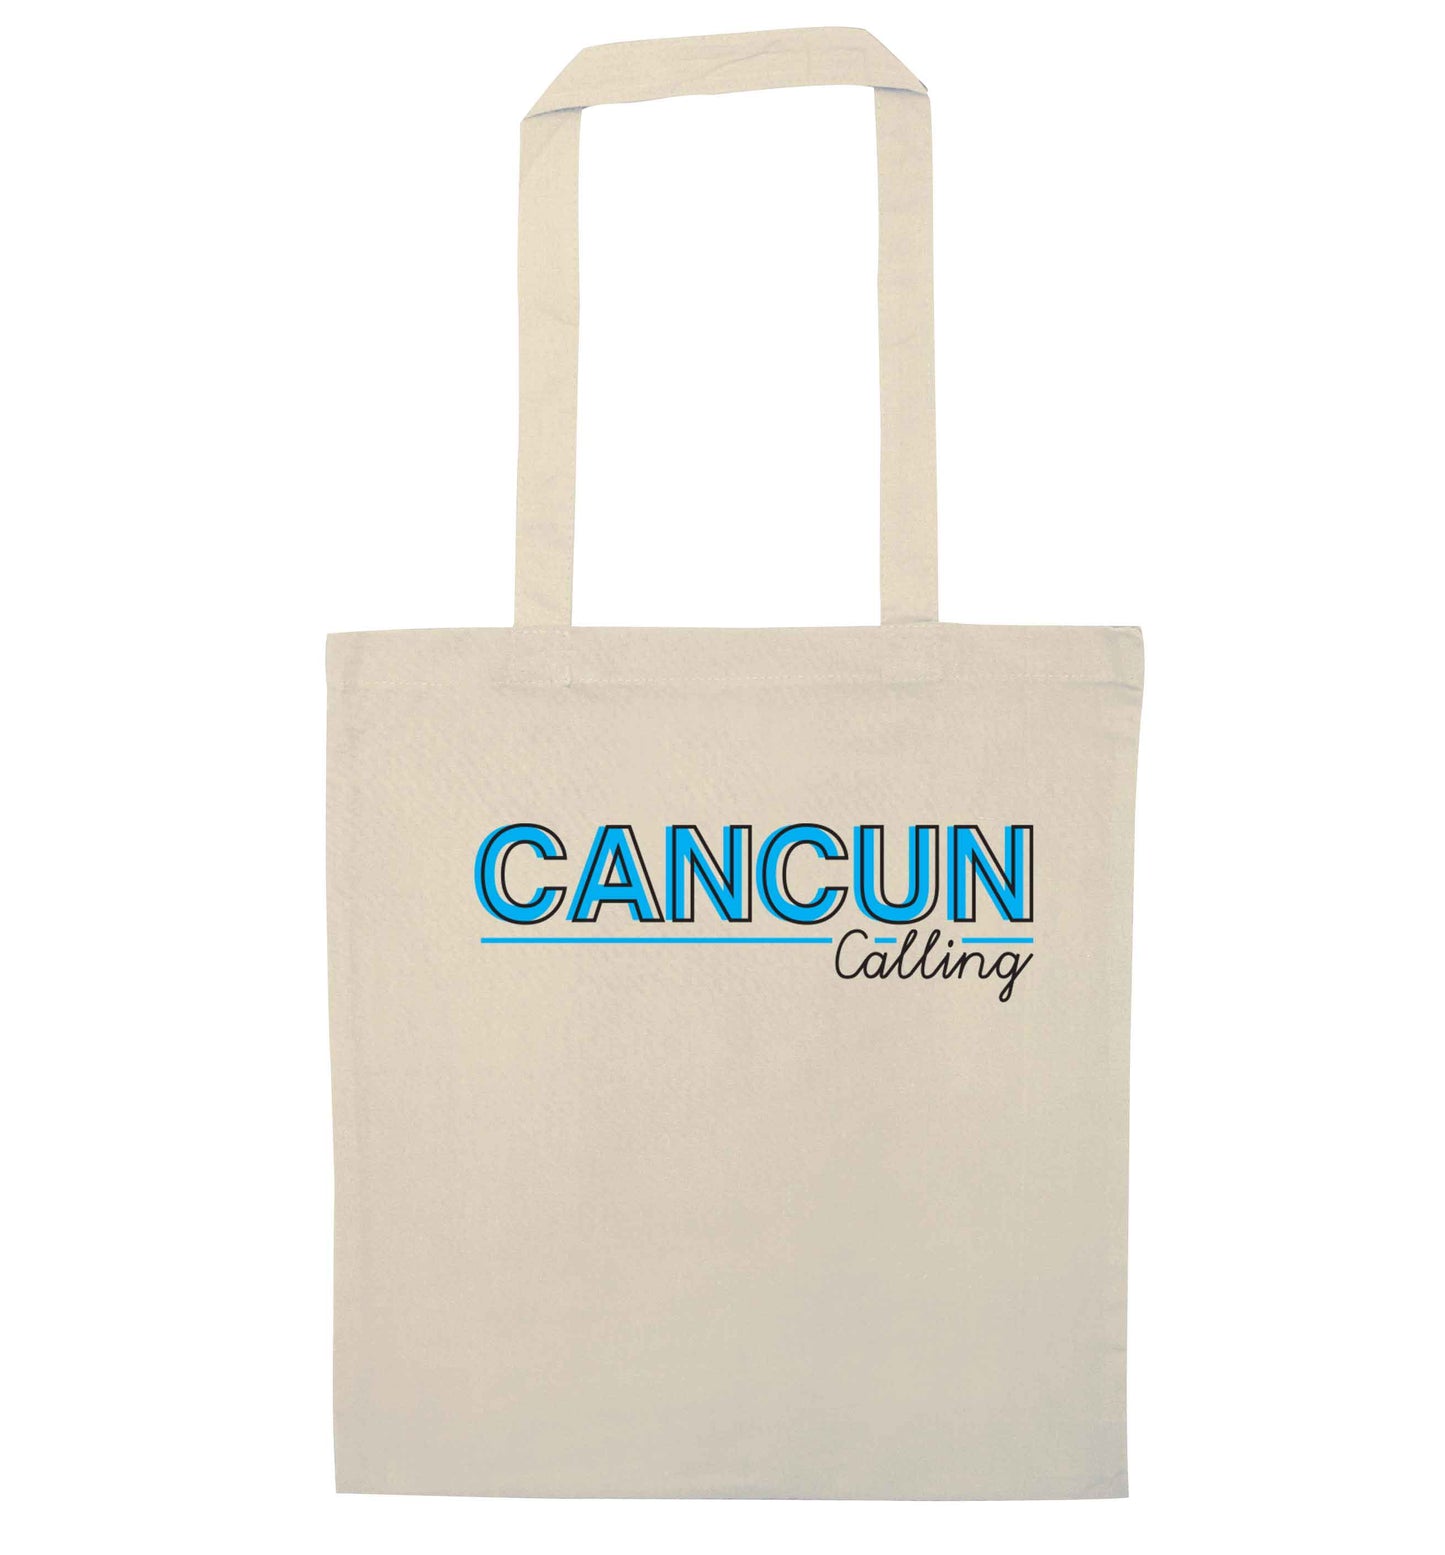 Cancun calling natural tote bag